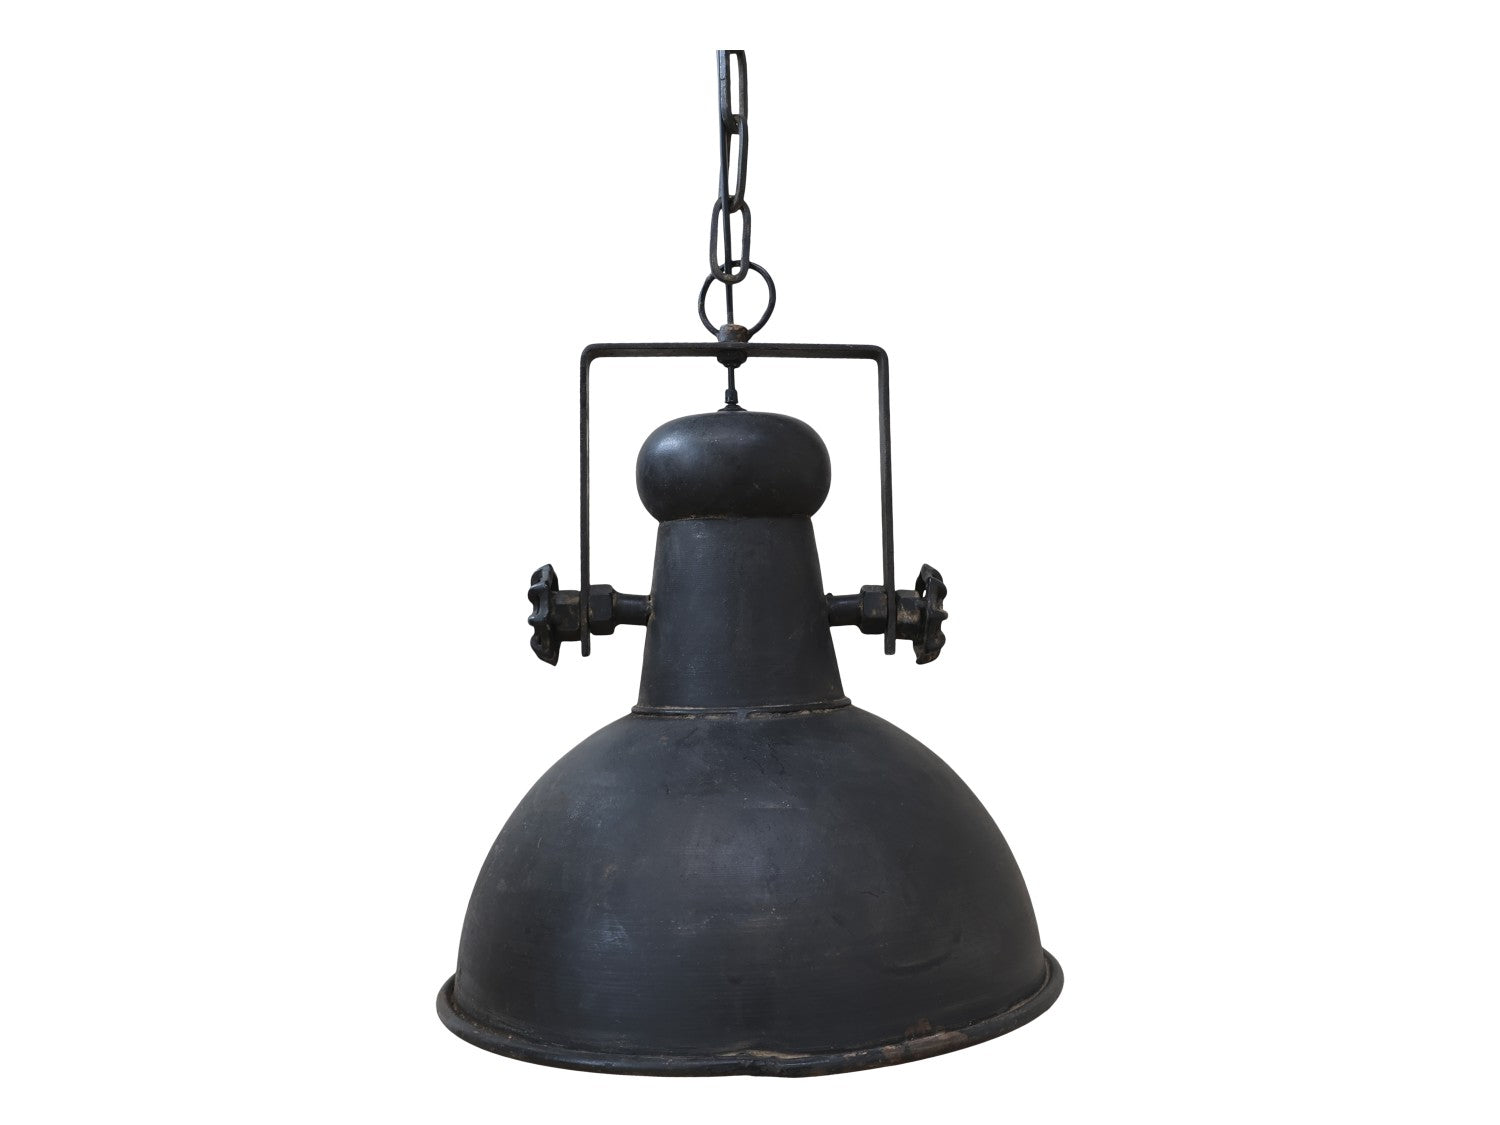 Snygg gammeldags taklampa i fransk industristil. Rustik lampa med en touch av gammalt som möter nytt.  E27 Max 60 W. Ljuskälla ingår ej. CE-märkt. Kabellängd: 1,5 m.  Material: Järn  Mått: 40 x Ø 32 cm.